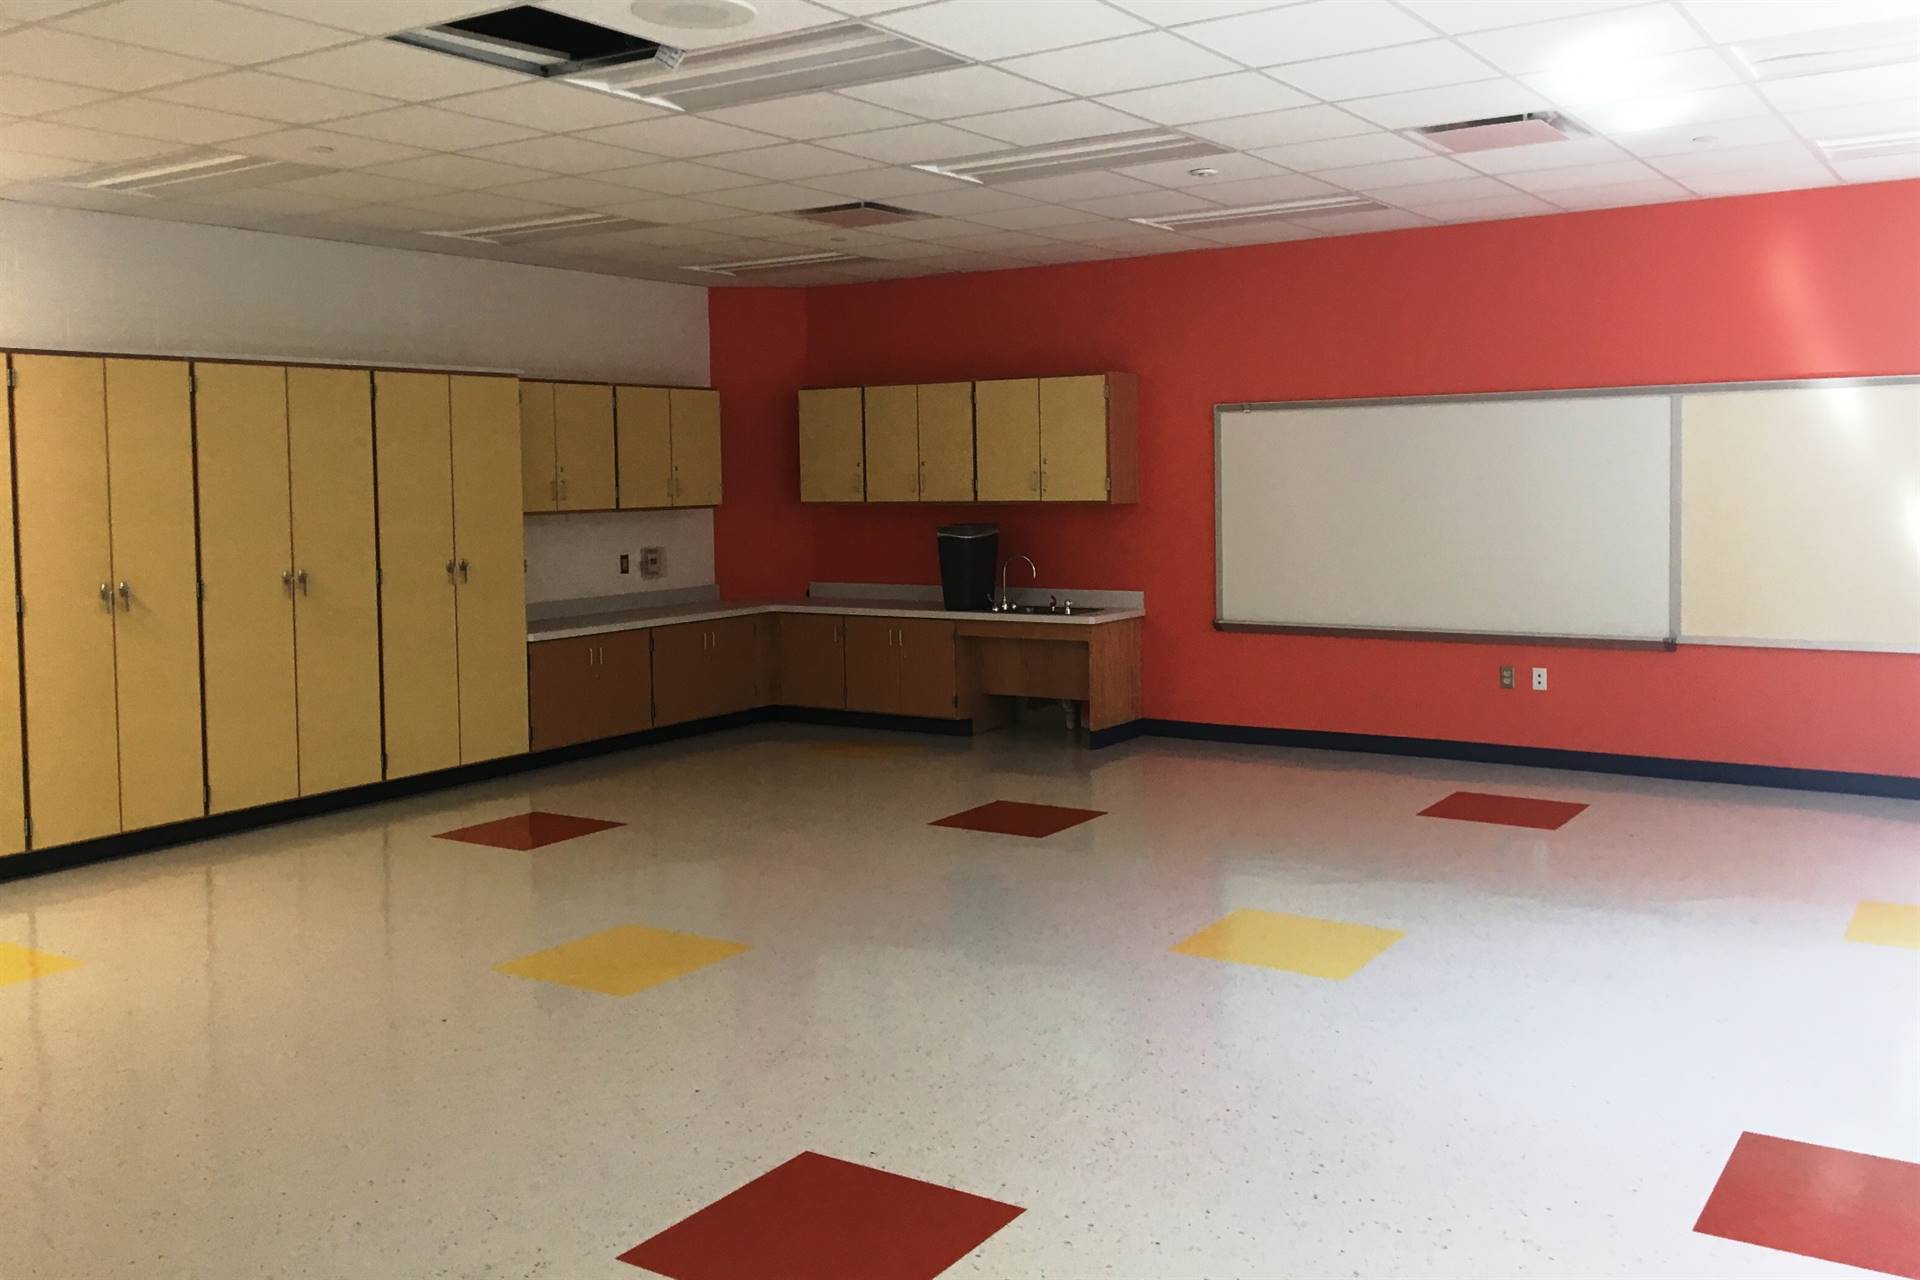 Scott Primary empty classroom